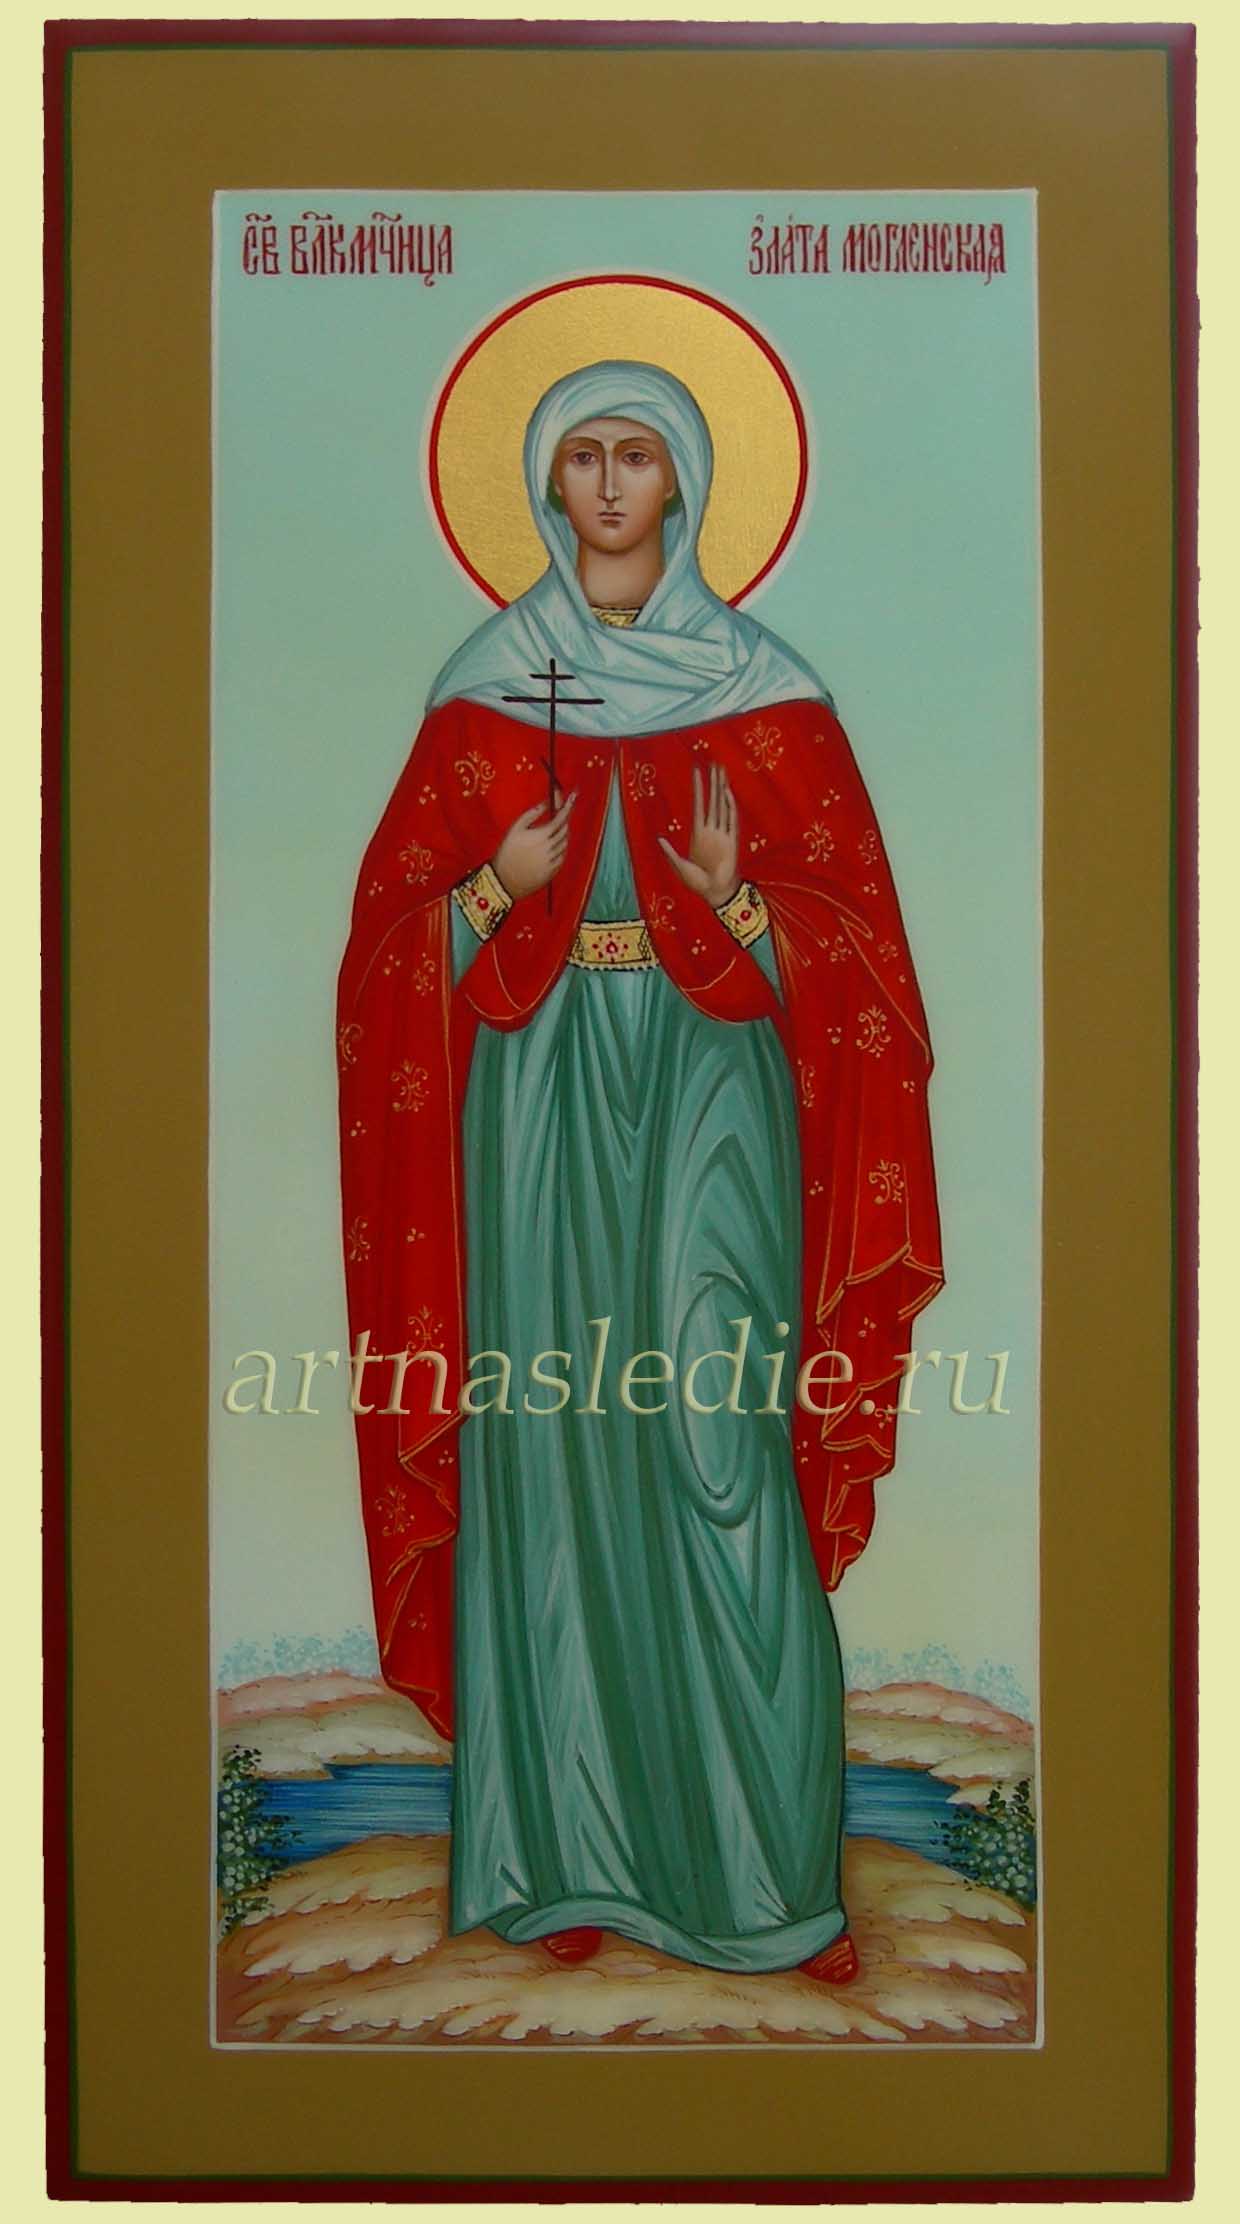 Икона Злата Могленская святая мученица Арт.0709, готовая и под заказ,купить в мастерской Наследие